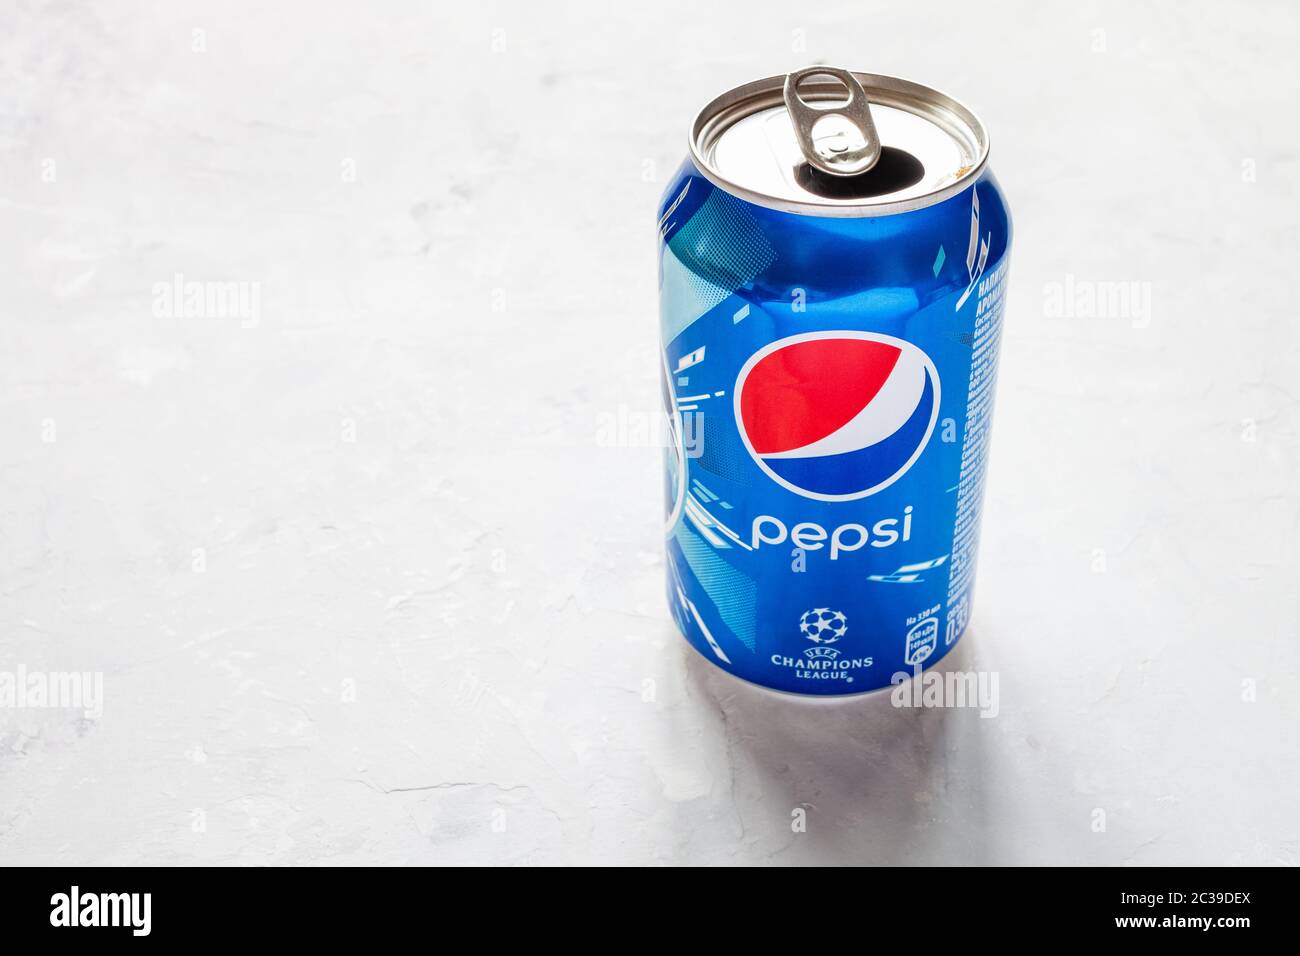 MOSCOU, RUSSIE - 17 JUIN 2020 : boîte ouverte de Pepsi avec logo de la  Ligue des champions de l'UEFA sur un sol en béton. Pepsi est une boisson  gazeuse fabriquée par